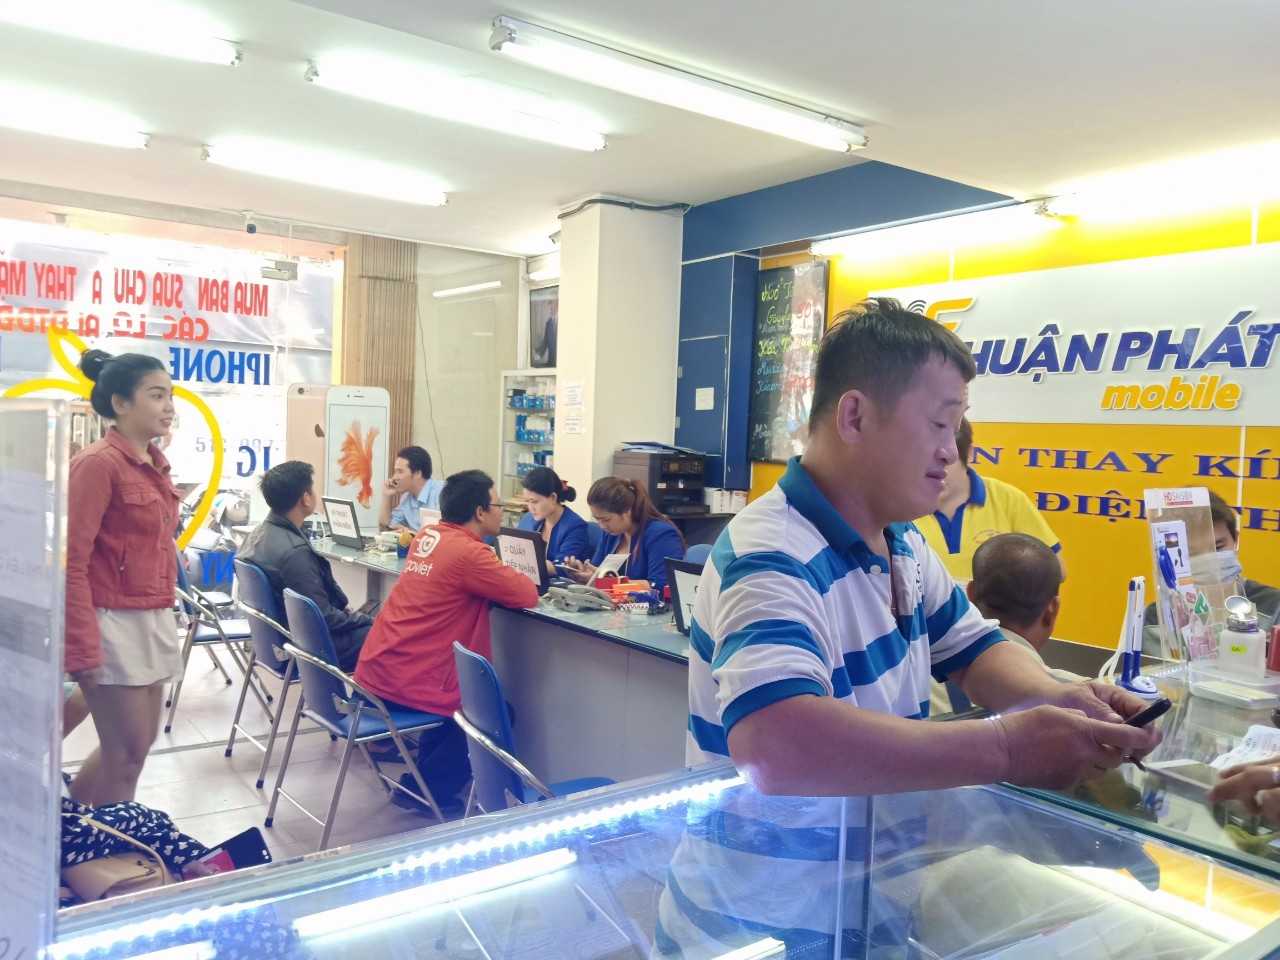 Khách hàng đến sửa điện thoại Vivo tại Thuận Phát Mobile